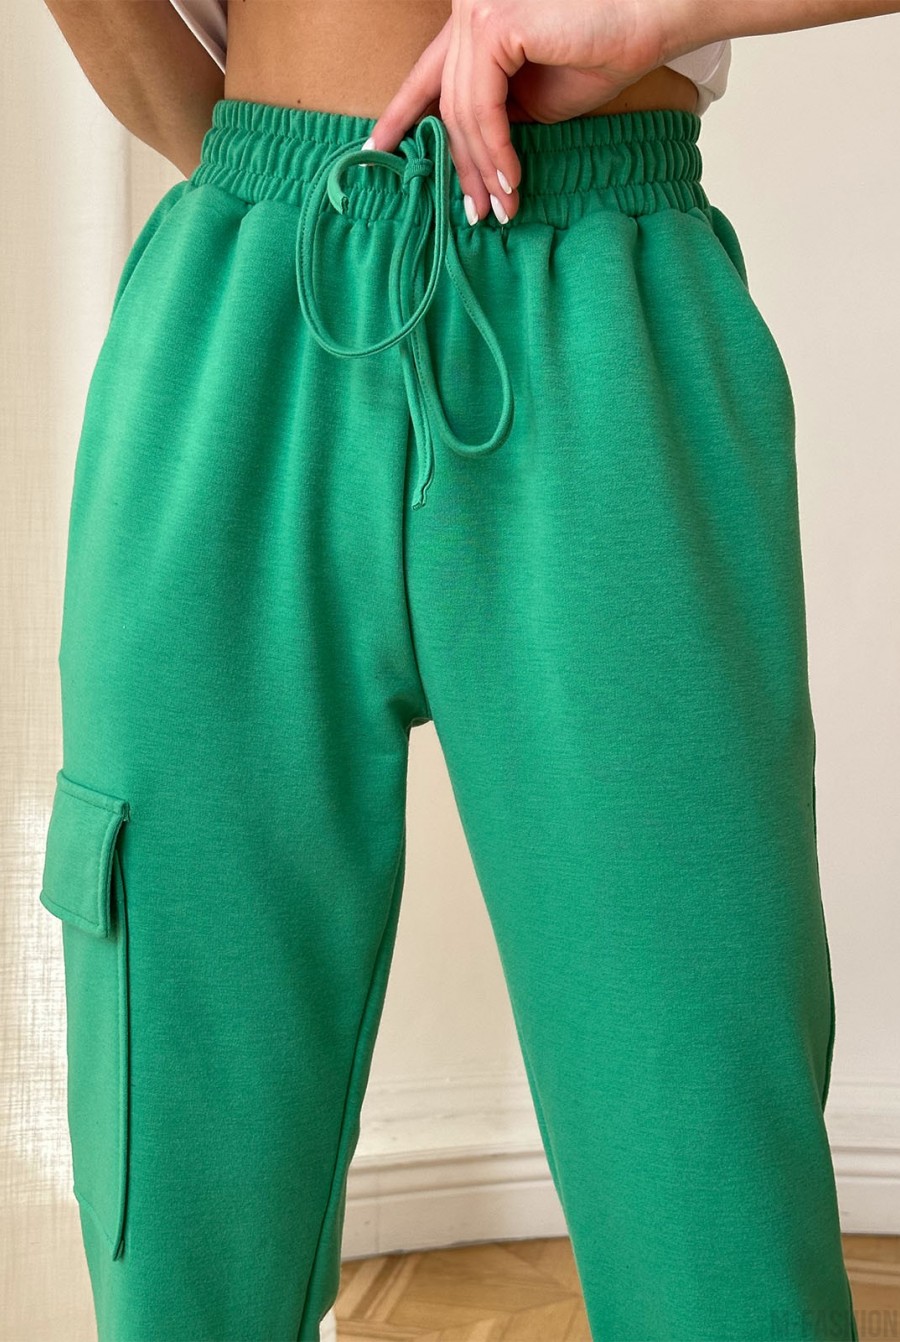 Зеленые трикотажные штаны карго - Фото 4